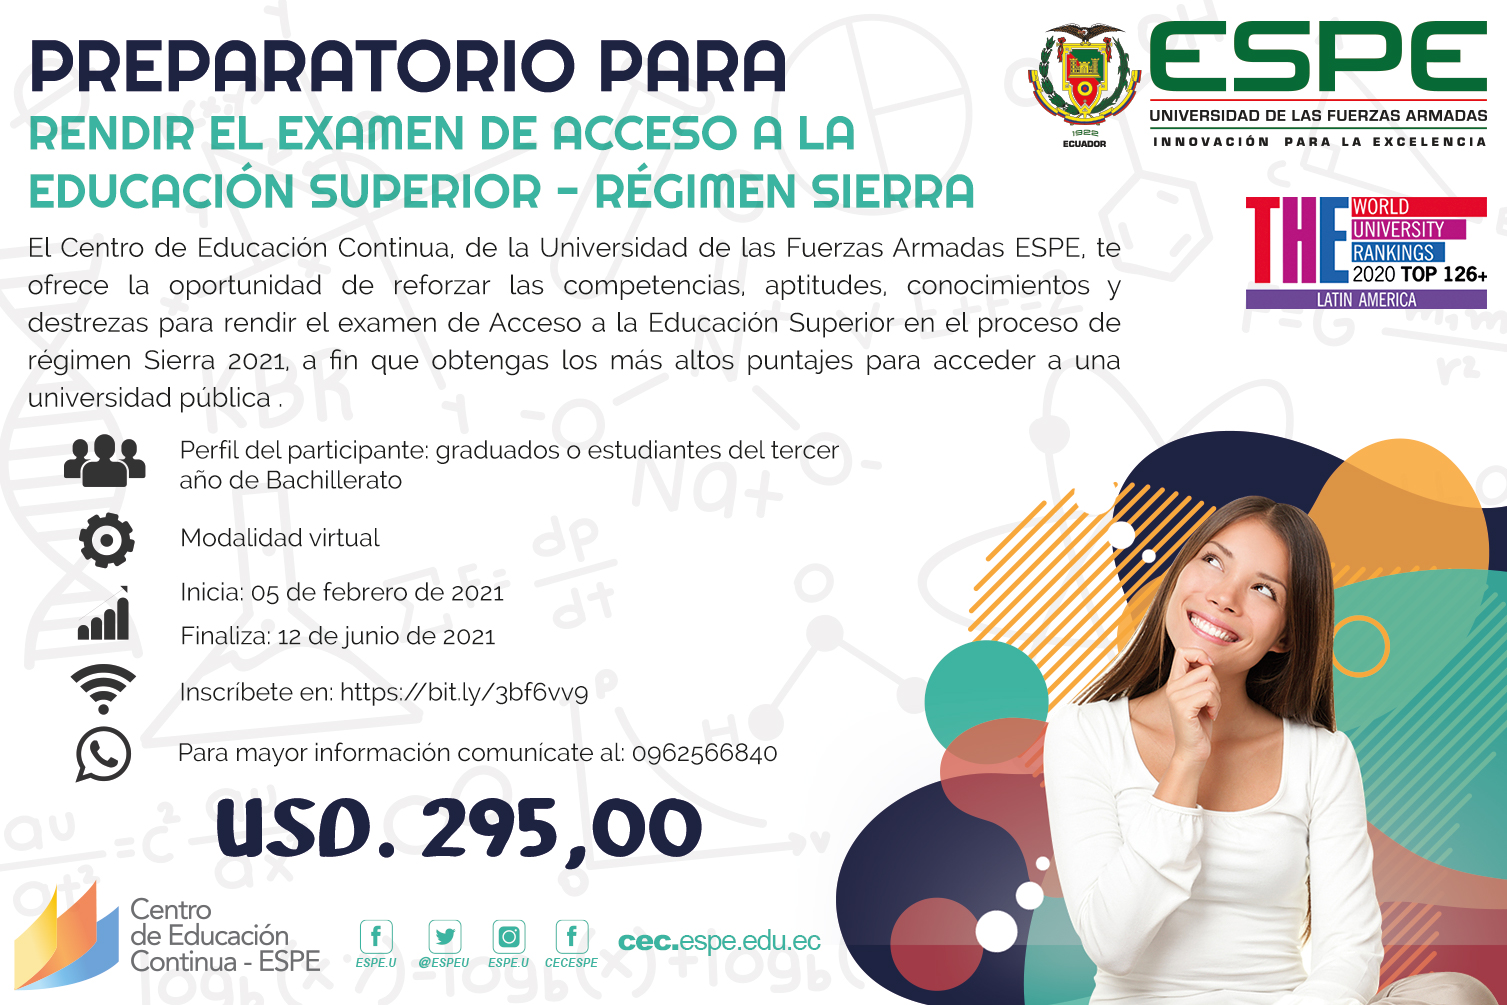 Acceso a la educación superior régimen Sierra 2021, ESPE